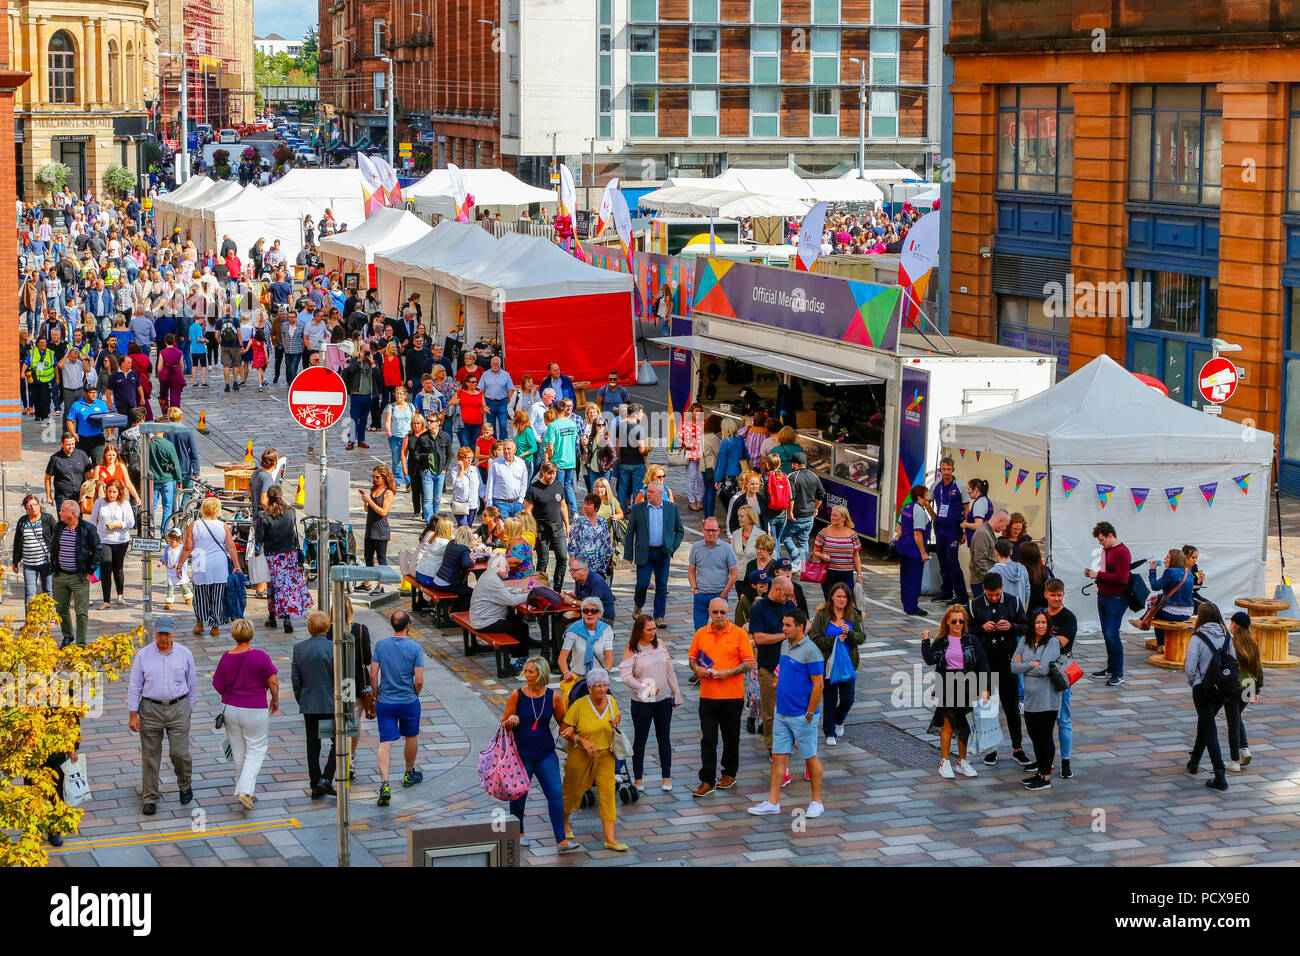 Glasgow, Royaume-Uni, le 4 août 2018. Le premier jour de la Merchant City festival, des milliers ont profité de la chaude soirée d'été pour profiter de la rue des artistes, musiciens, danseurs et stands de nourriture. Le festival, un événement annuel, est exécuté en même temps que les jeux européens et doit s'achever le 12 août Banque D'Images